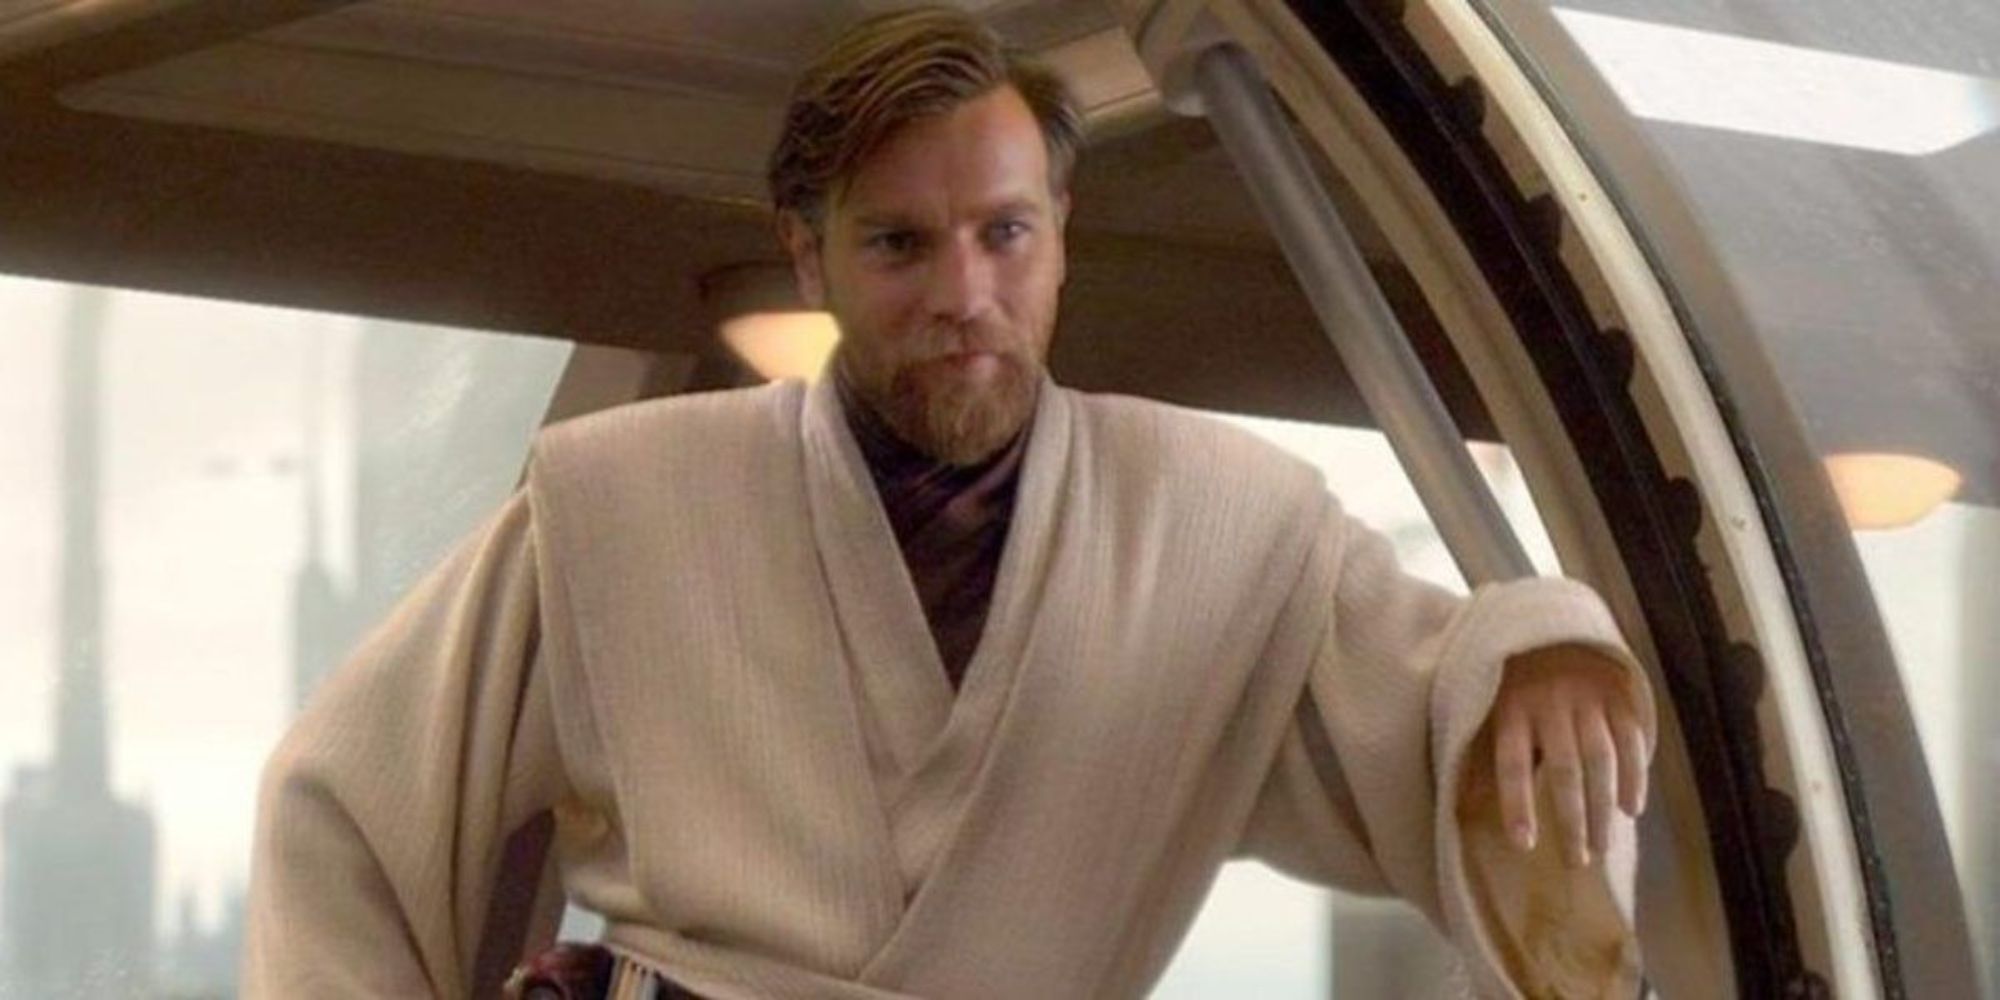 Obi-Wan Kenobi greeting Anakin